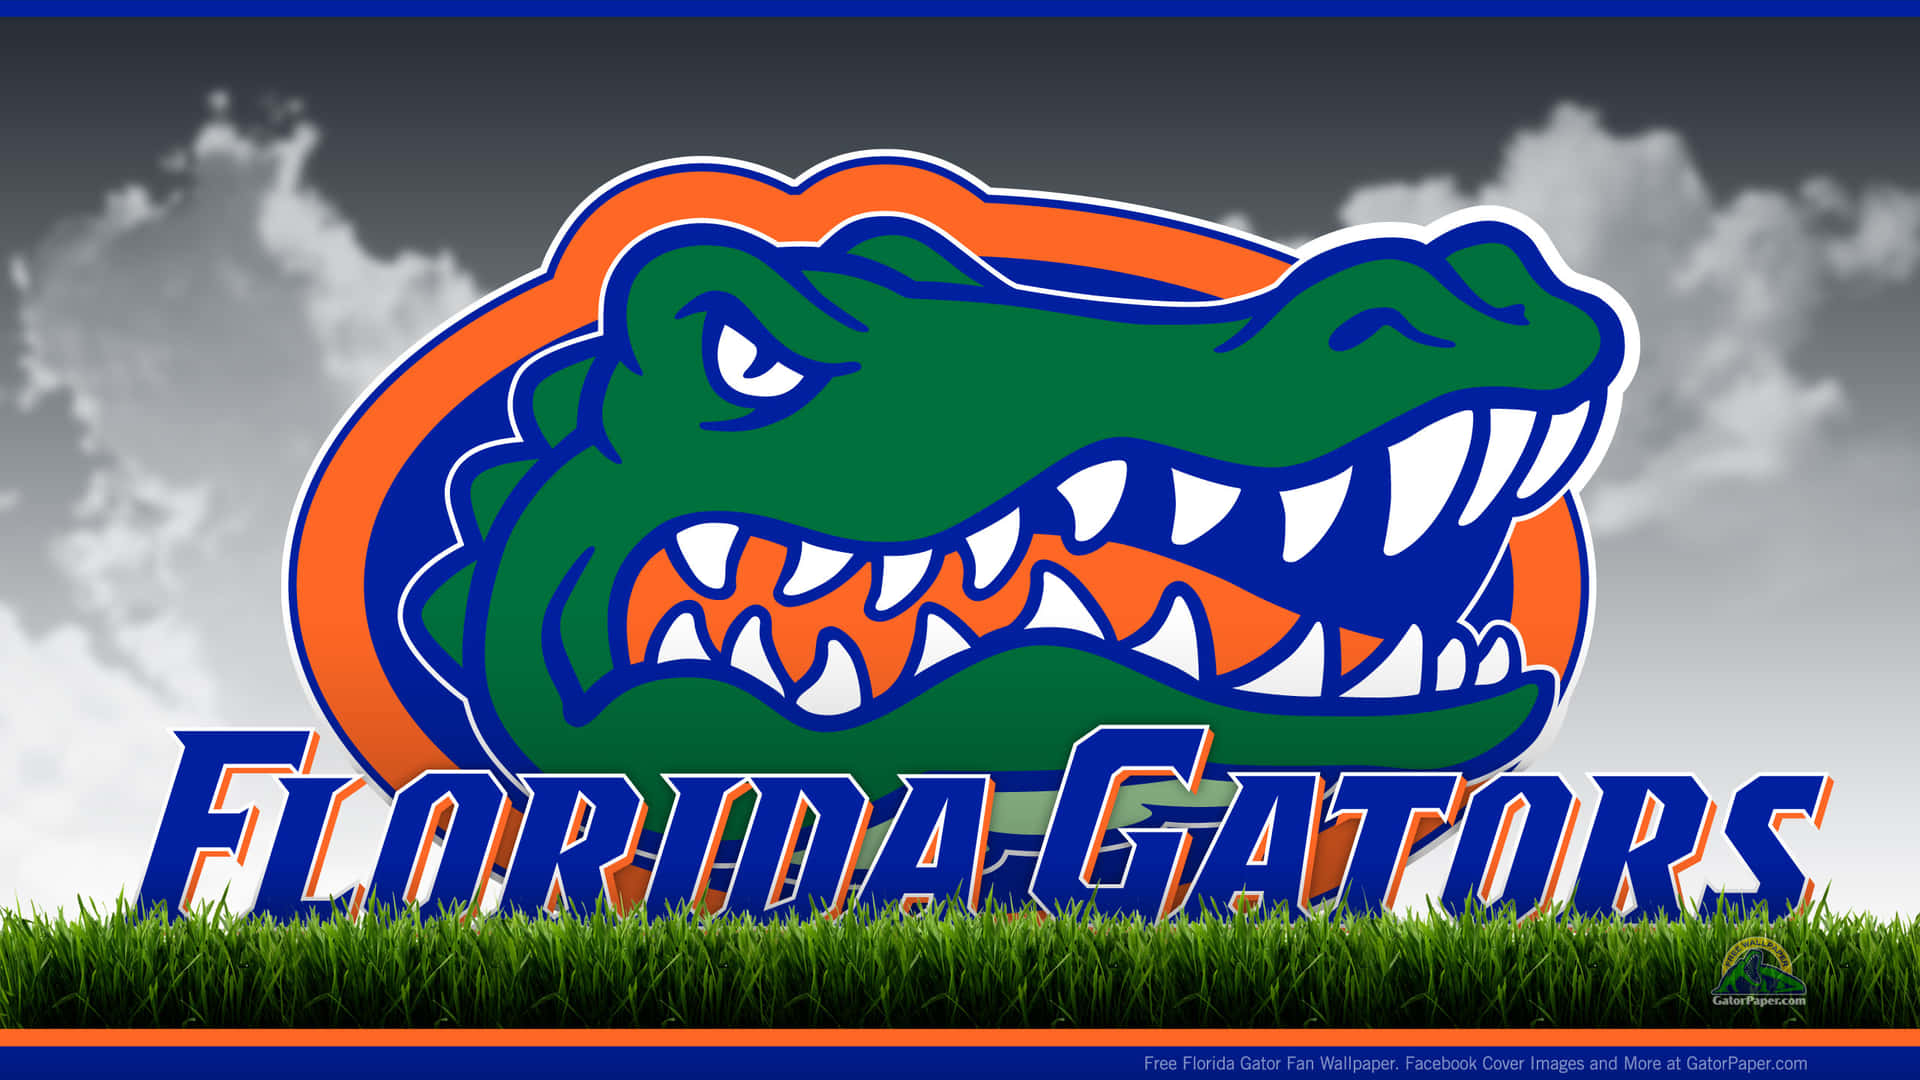 Daslogo Der Florida Gators Ist Im Gras Zu Sehen. Wallpaper